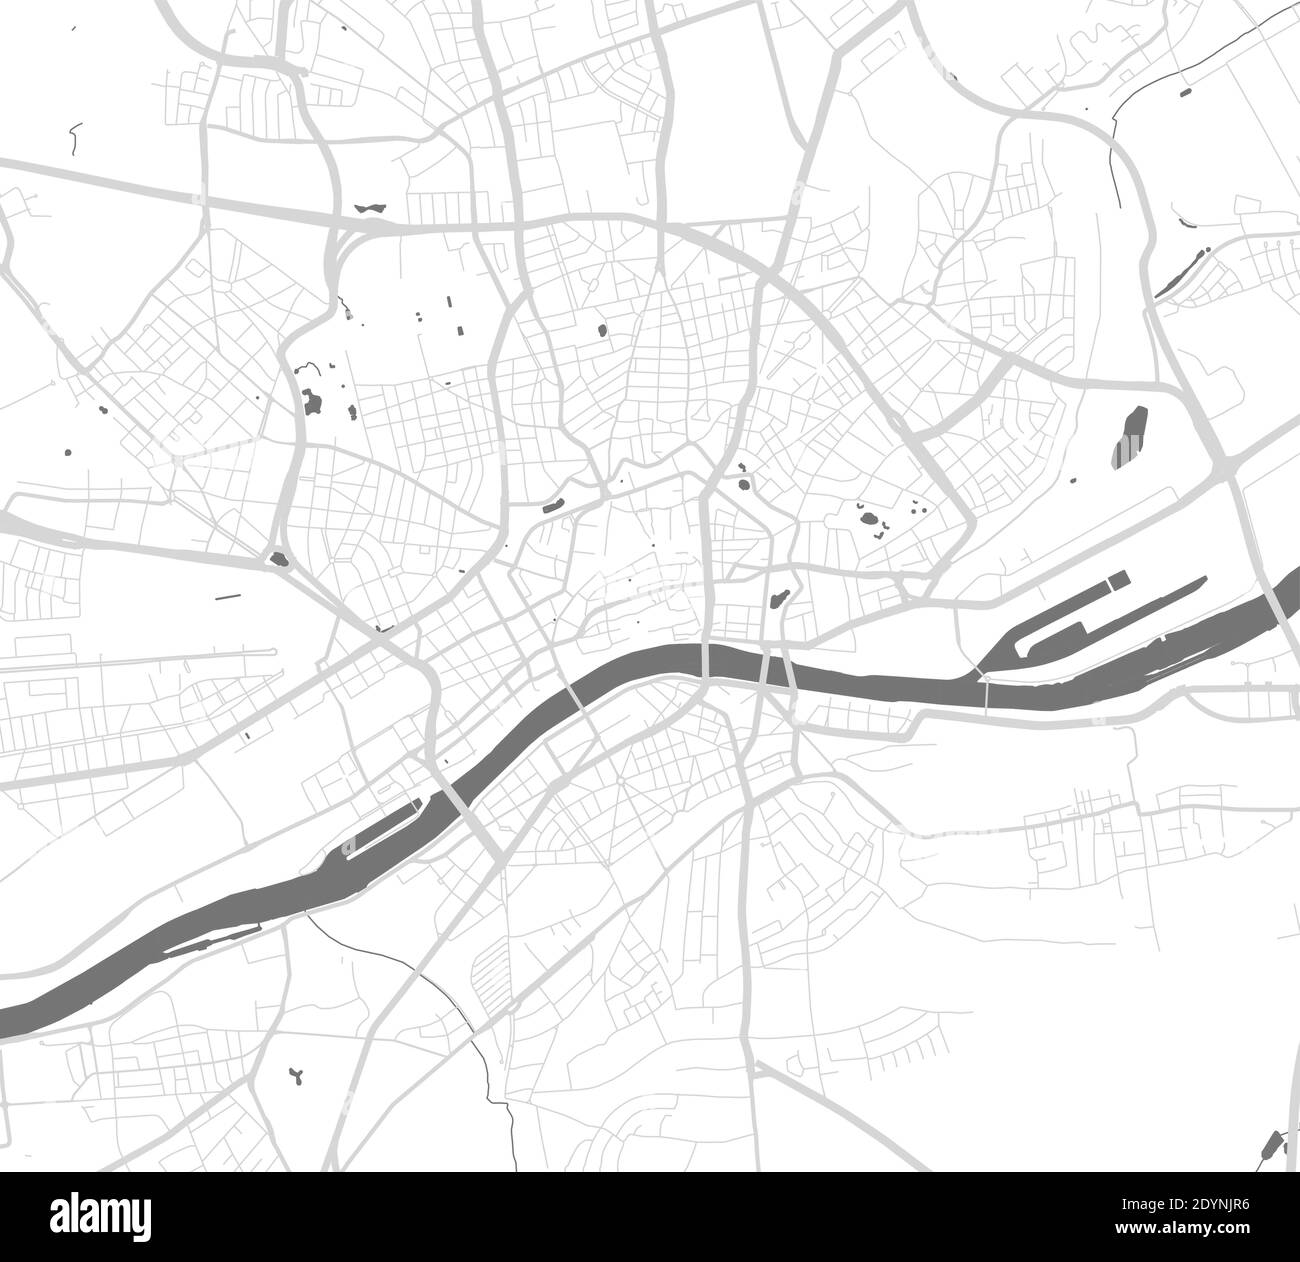 Urban city map of Frankfurt. Vector illustration, map art poster. Stock Vector